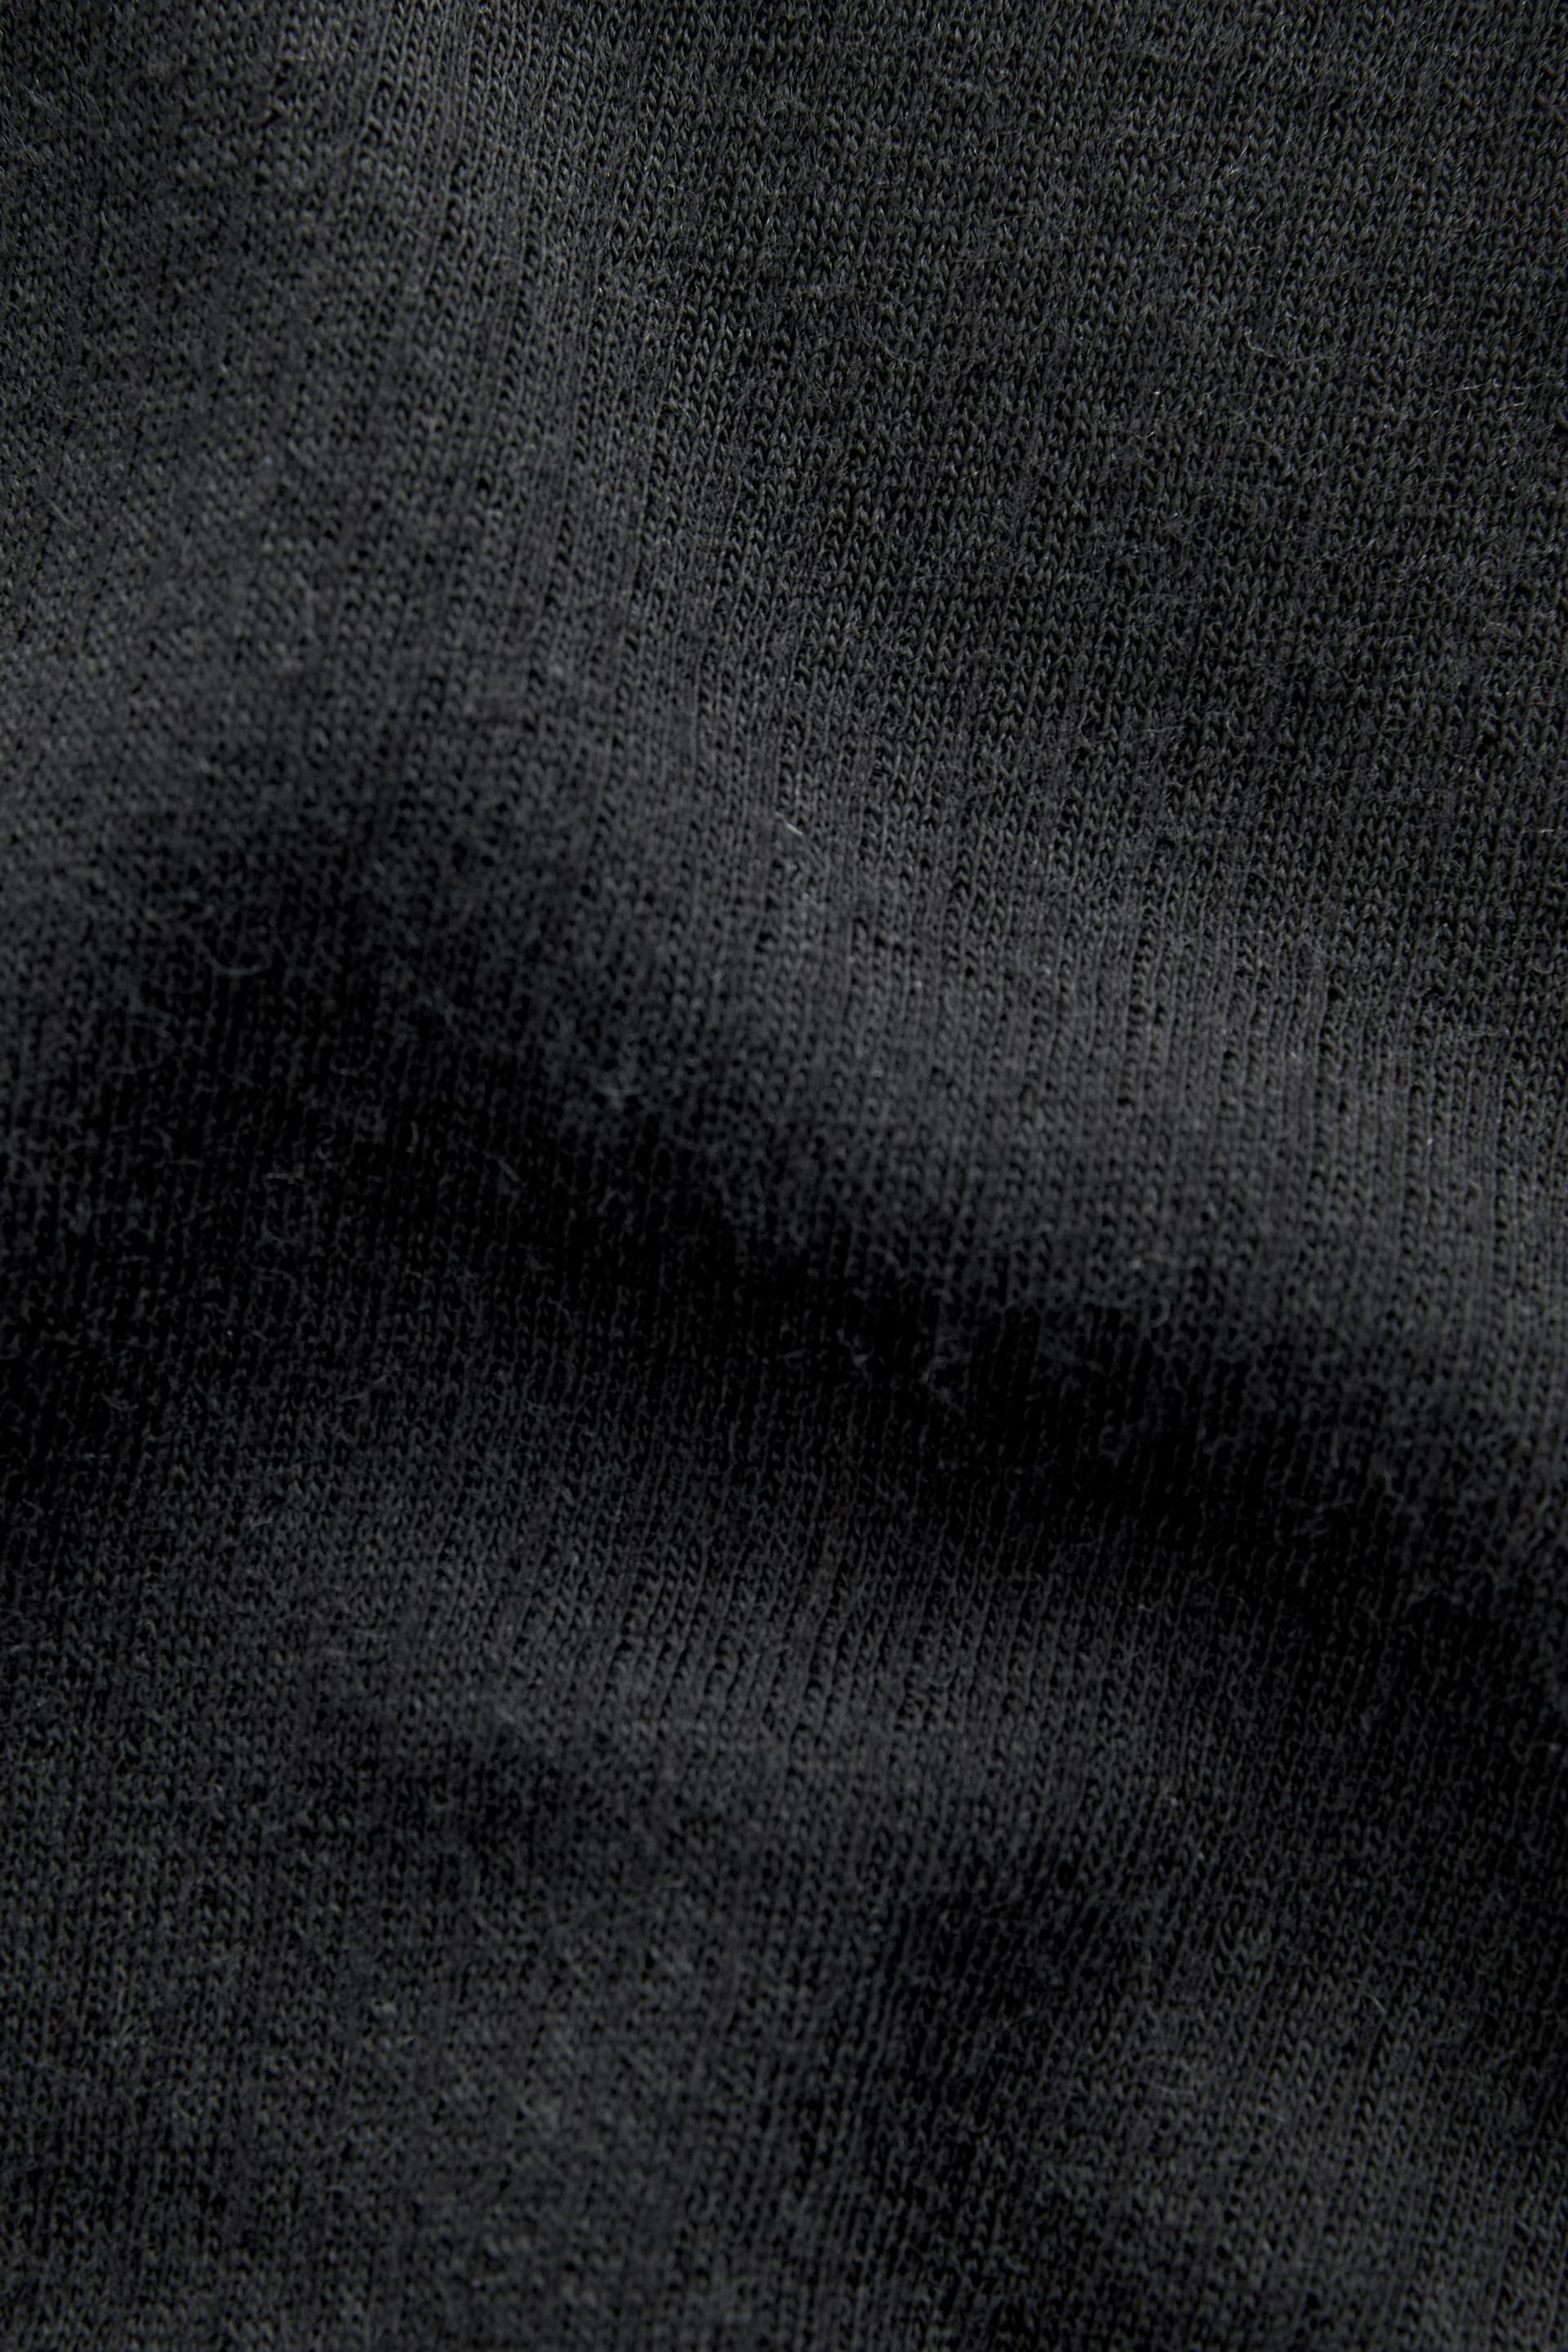 Black Long Sleeve Top Merino Blend Thermal Long Sleeve Top - Image 9 of 9